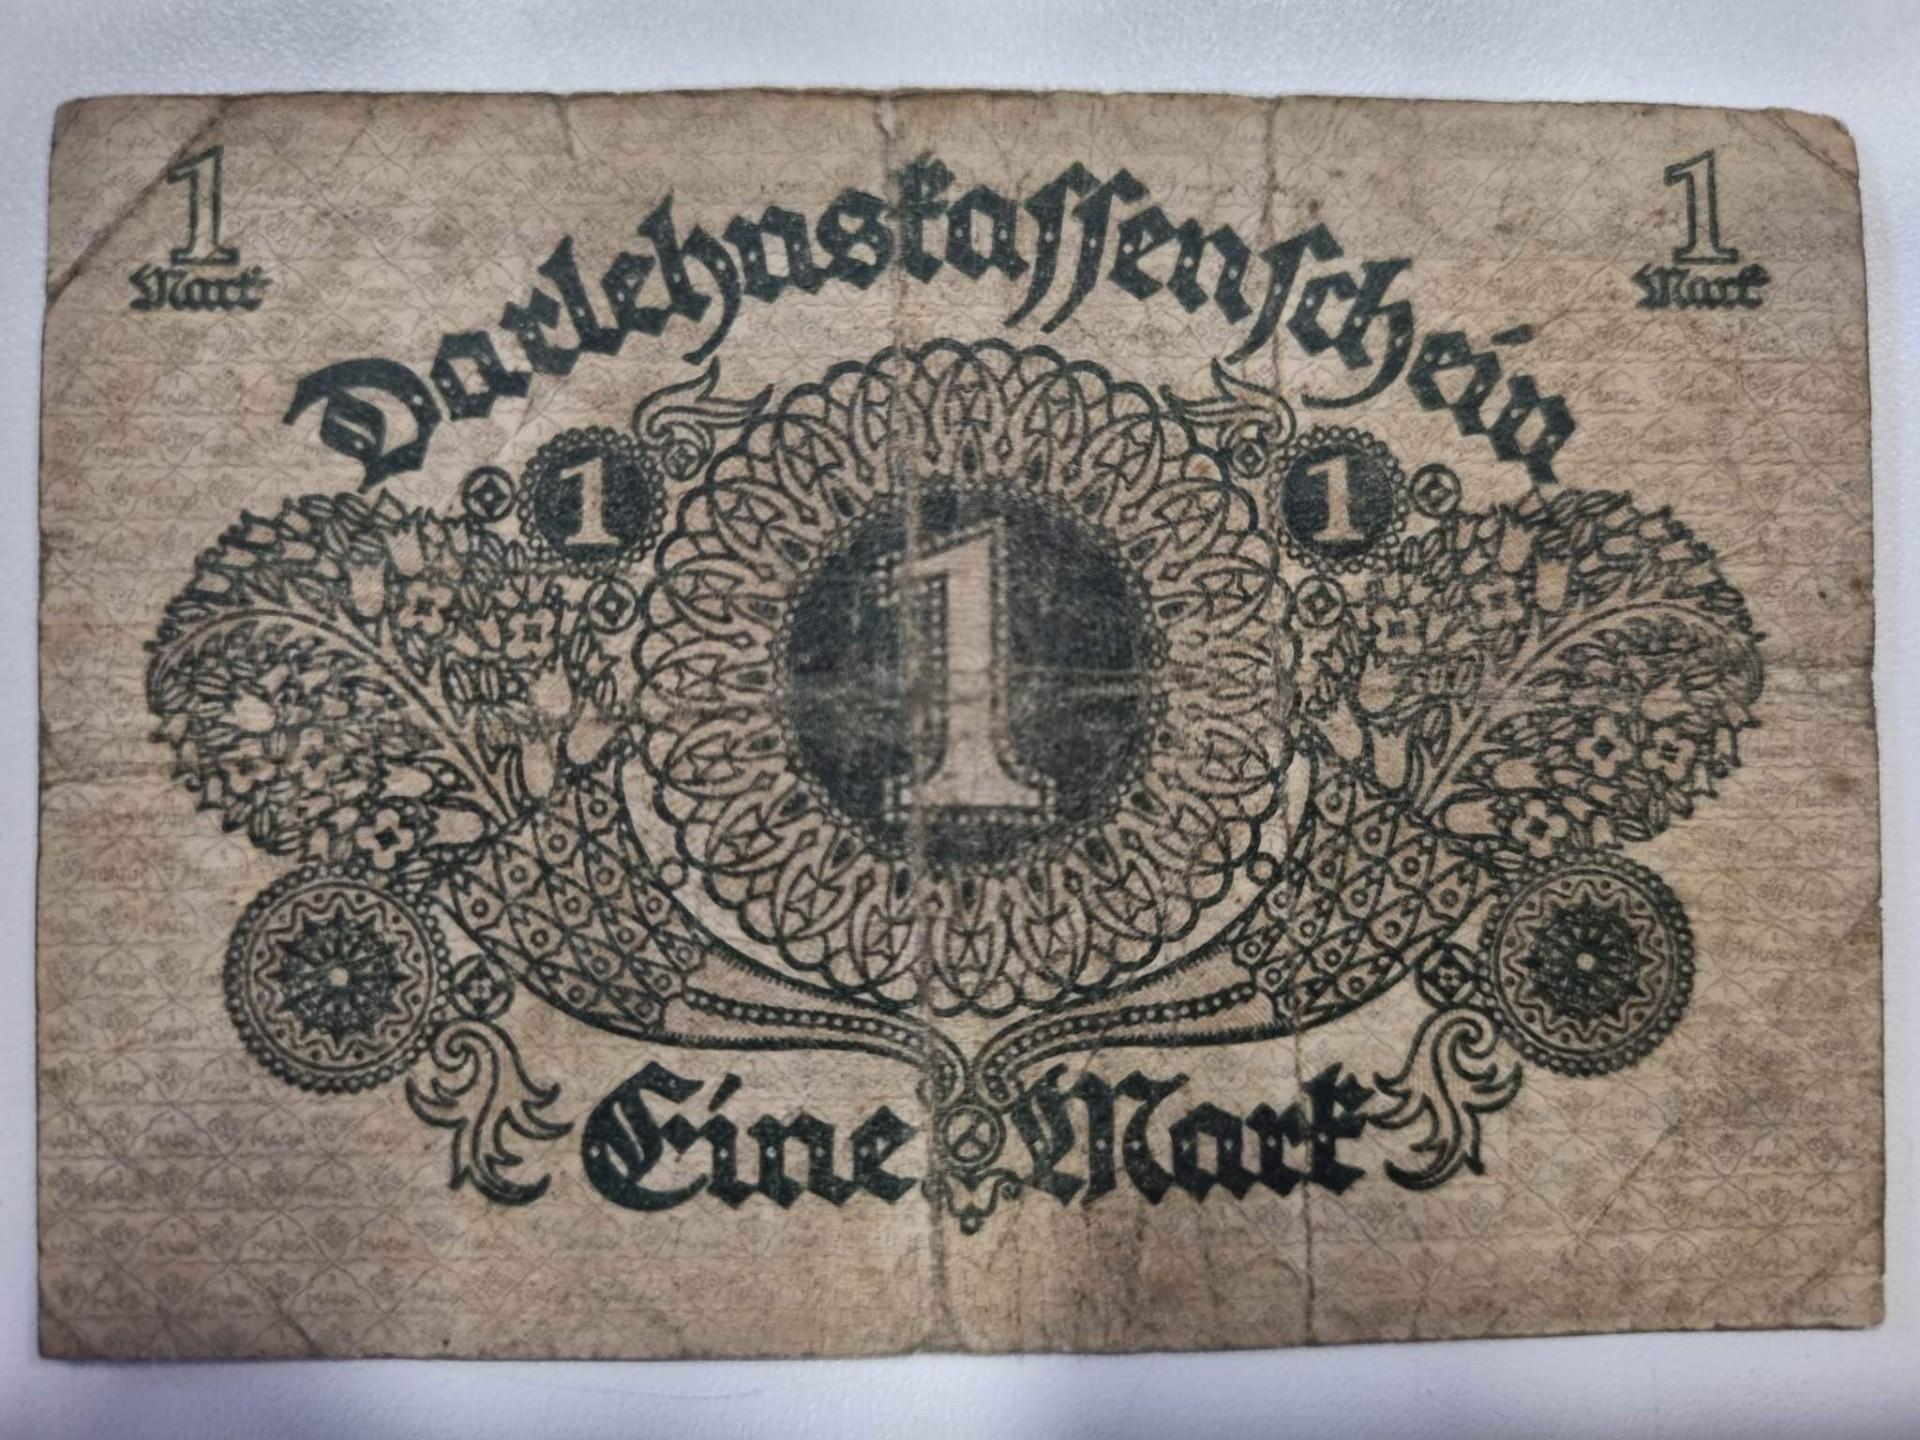 Vokietija Darlehnskassenscheine 1 Mark Berlyn 1920